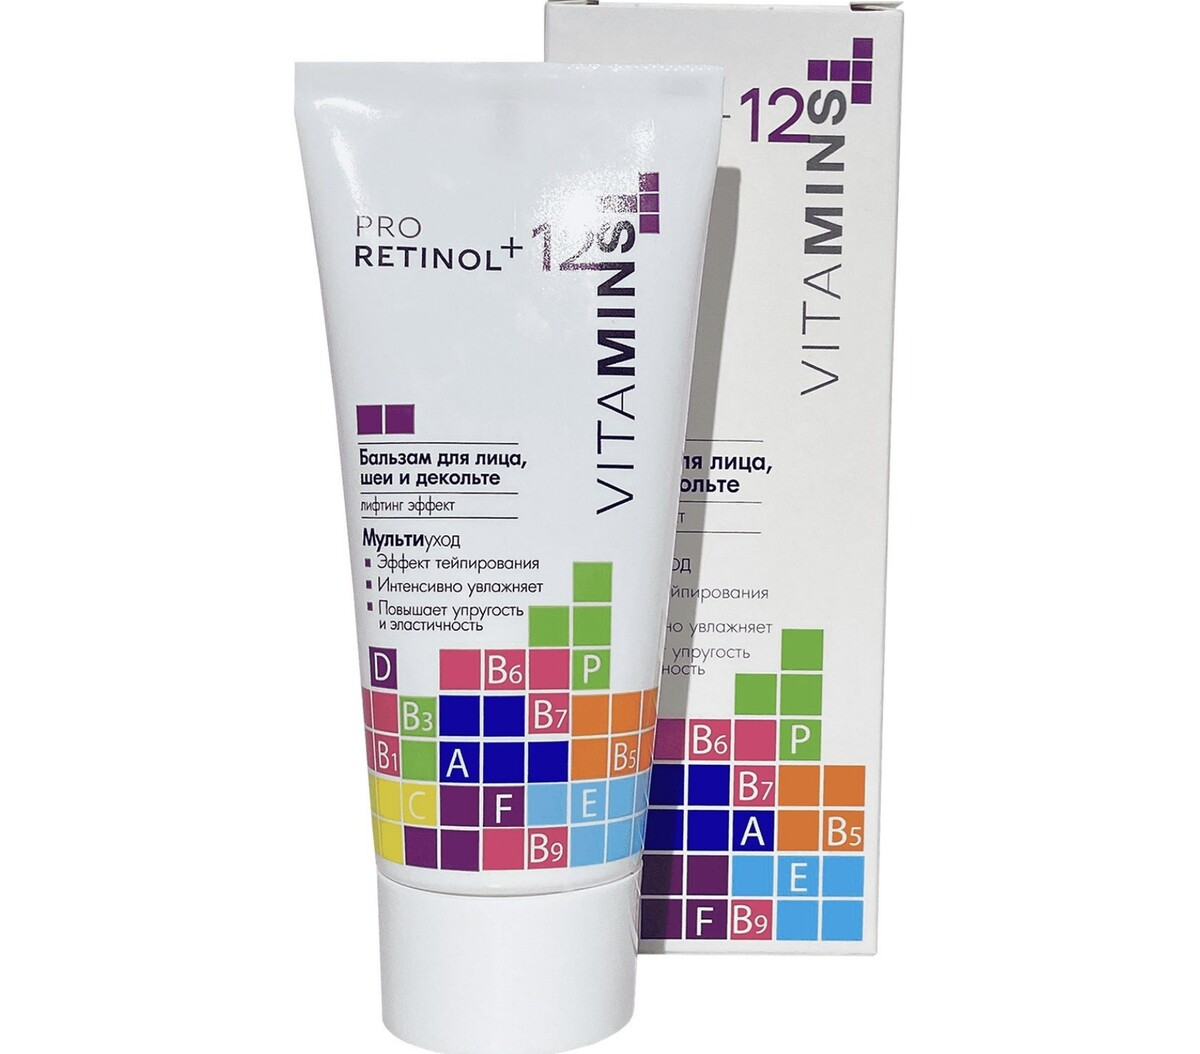 Pro retinol + 12 vitamins бальзам для лица, шеи и декольте, 50г бальзам крем для лица и тела после бани 200 мл